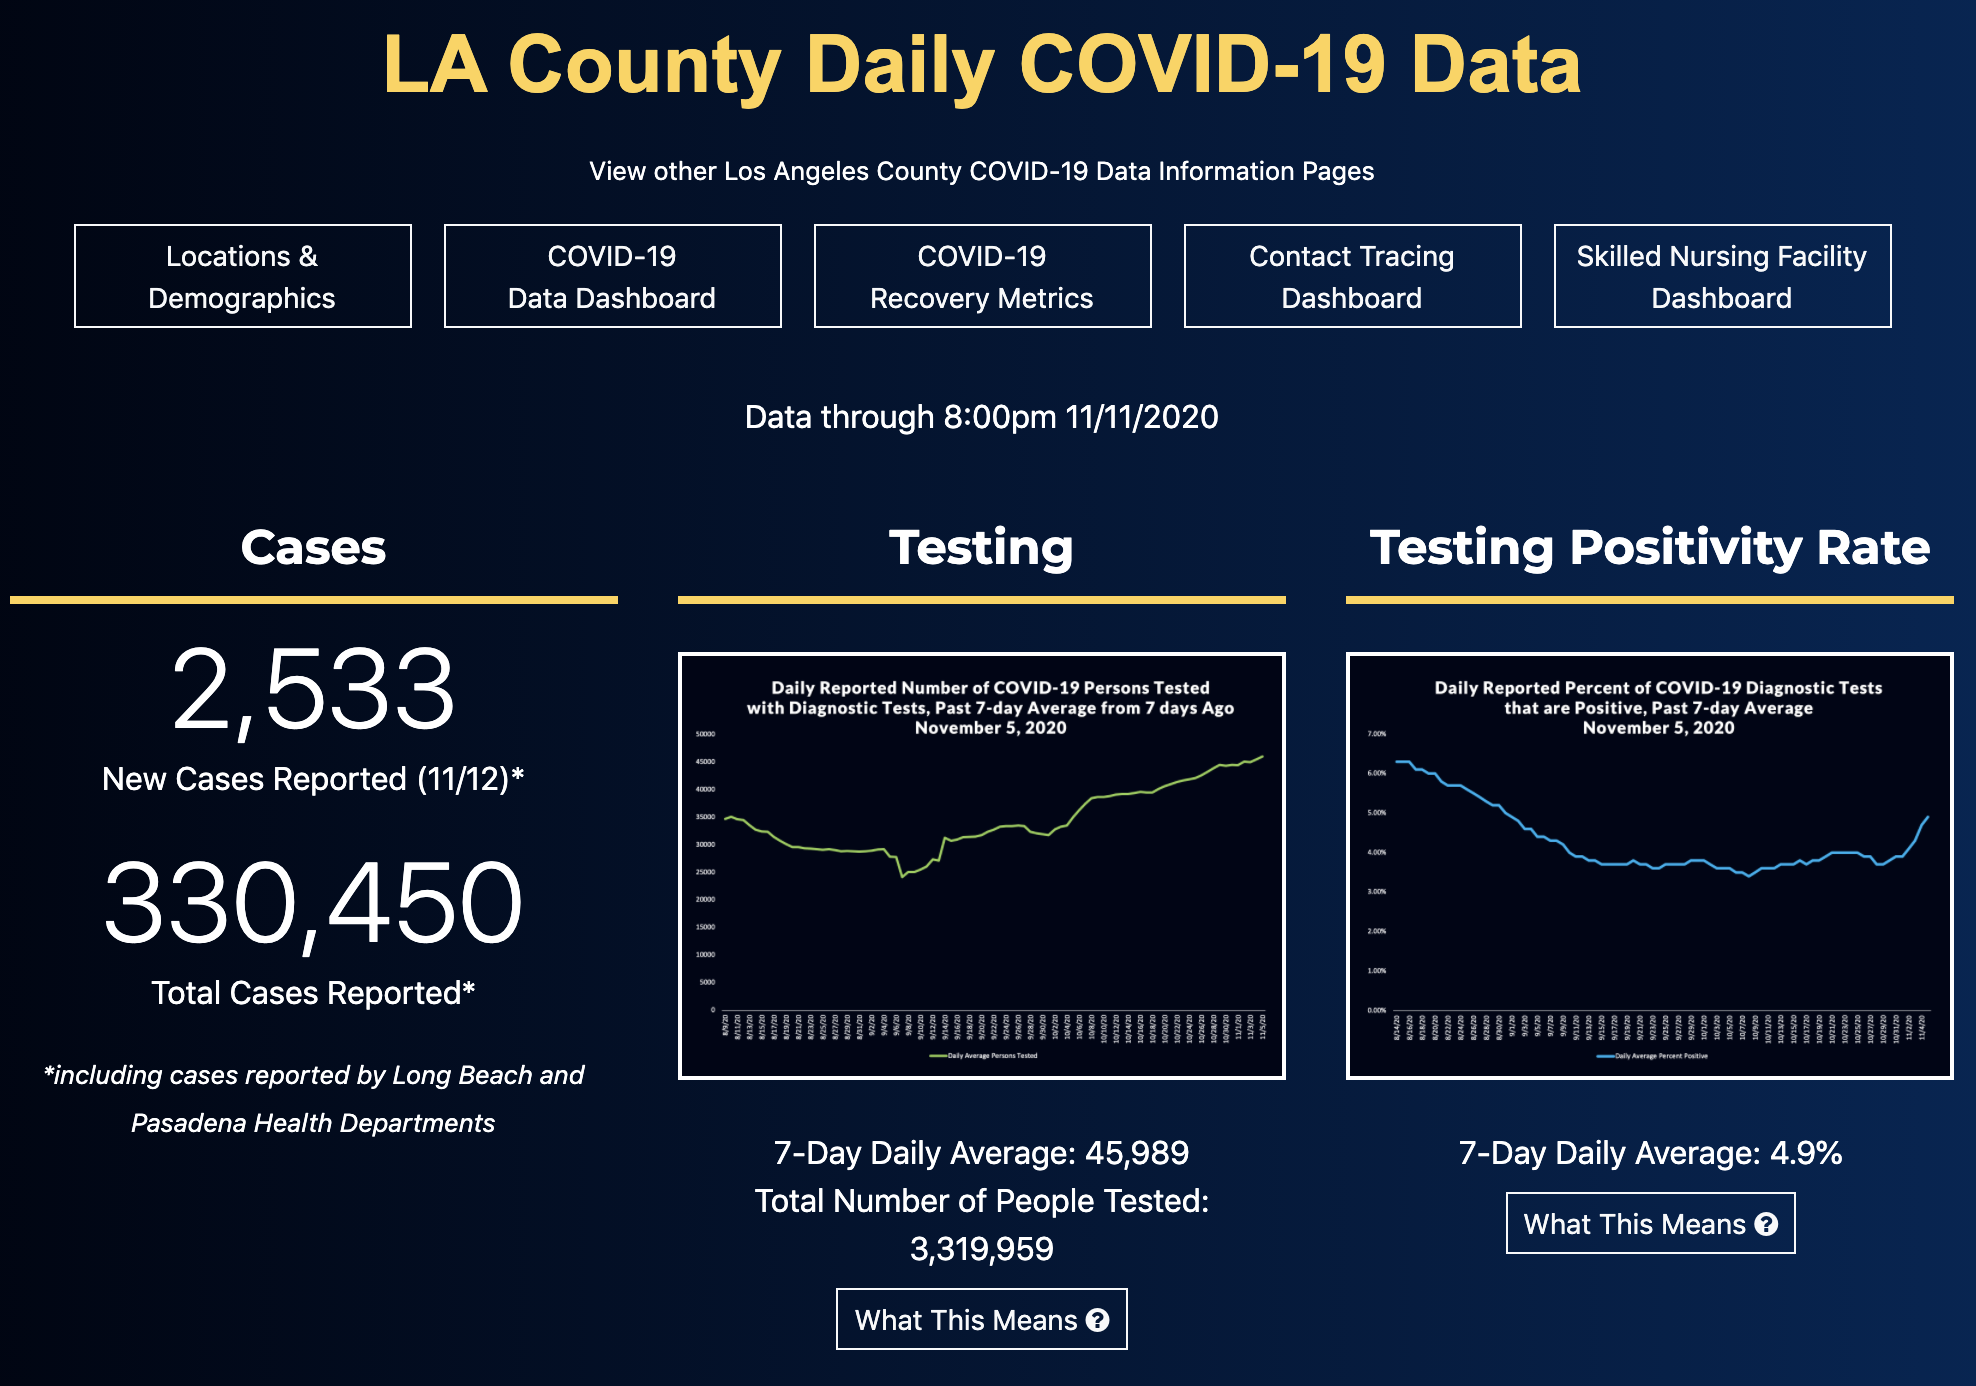 LA County COVID-19 Data Image